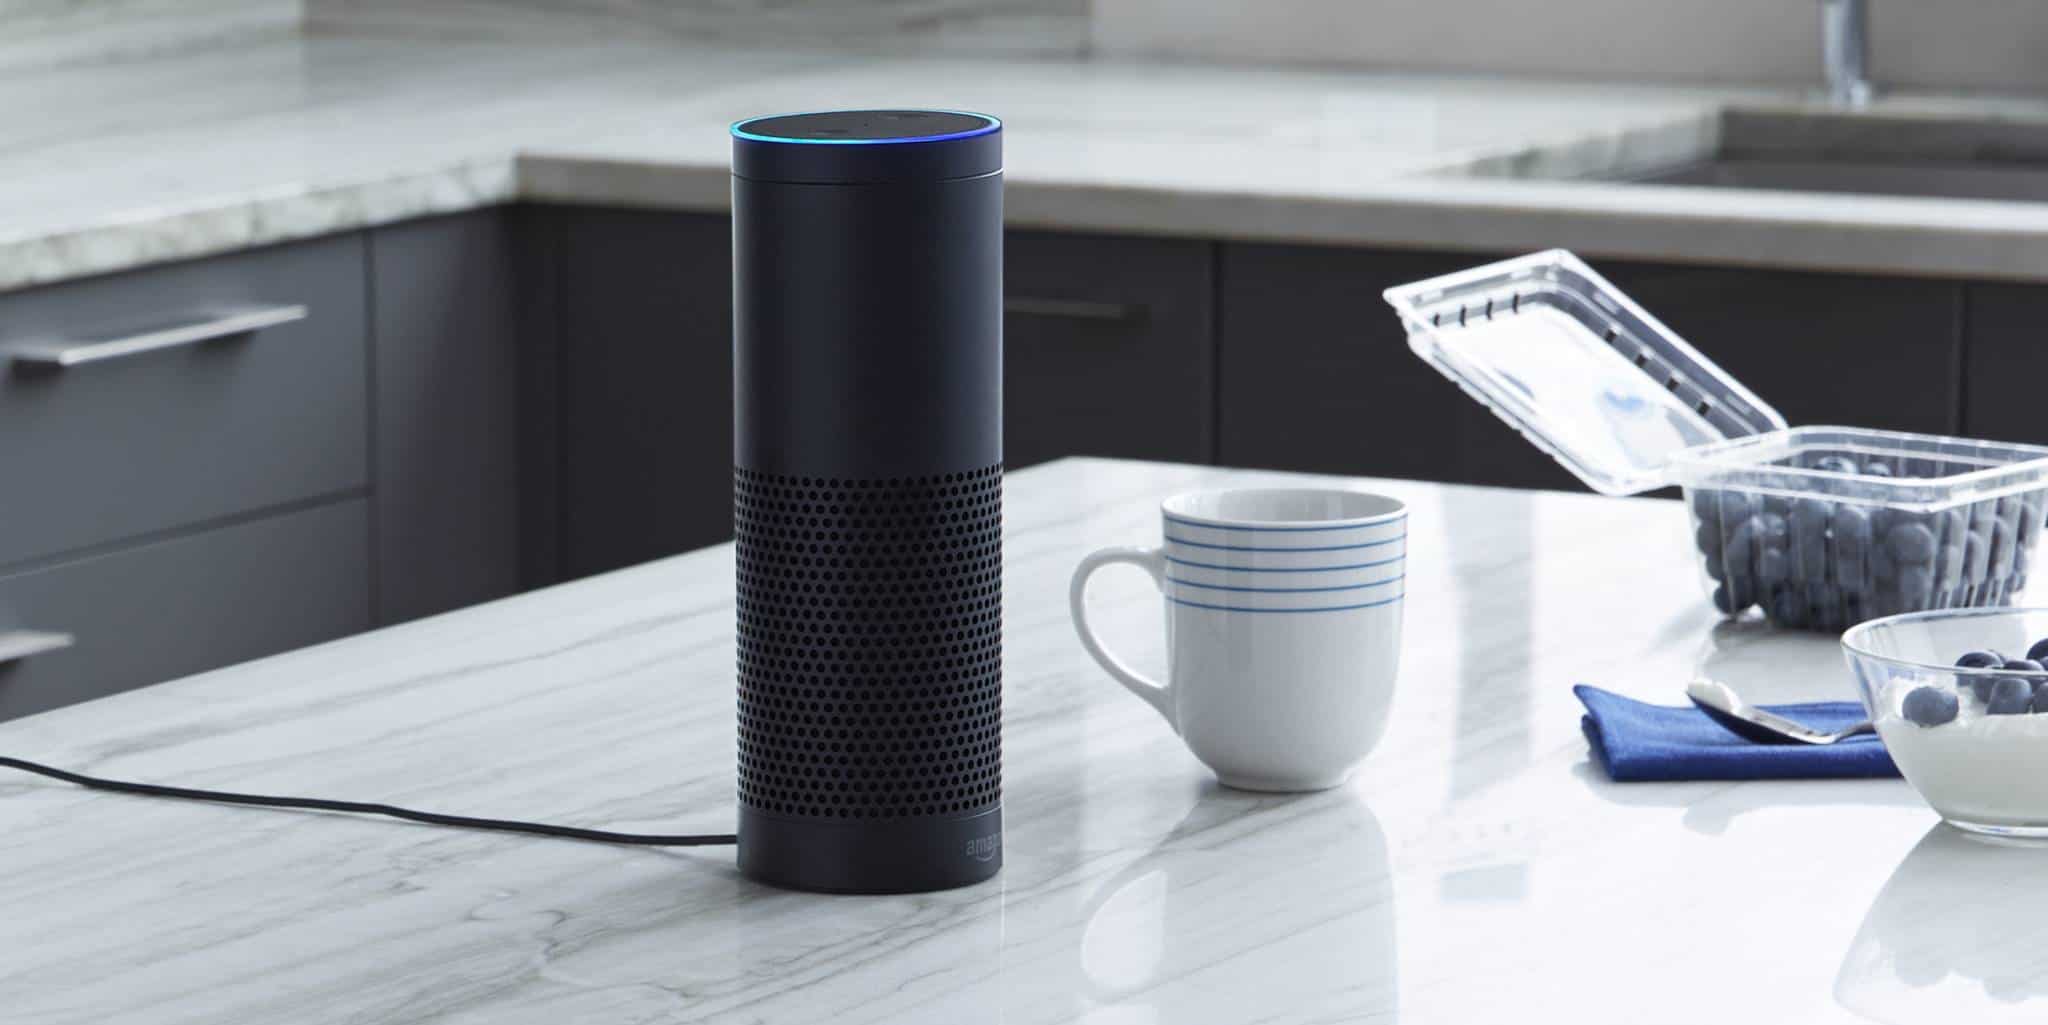 Amazon développerait des puces dotées d'intelligence artificielle pour permettre à Alexa de répondre plus rapidement.